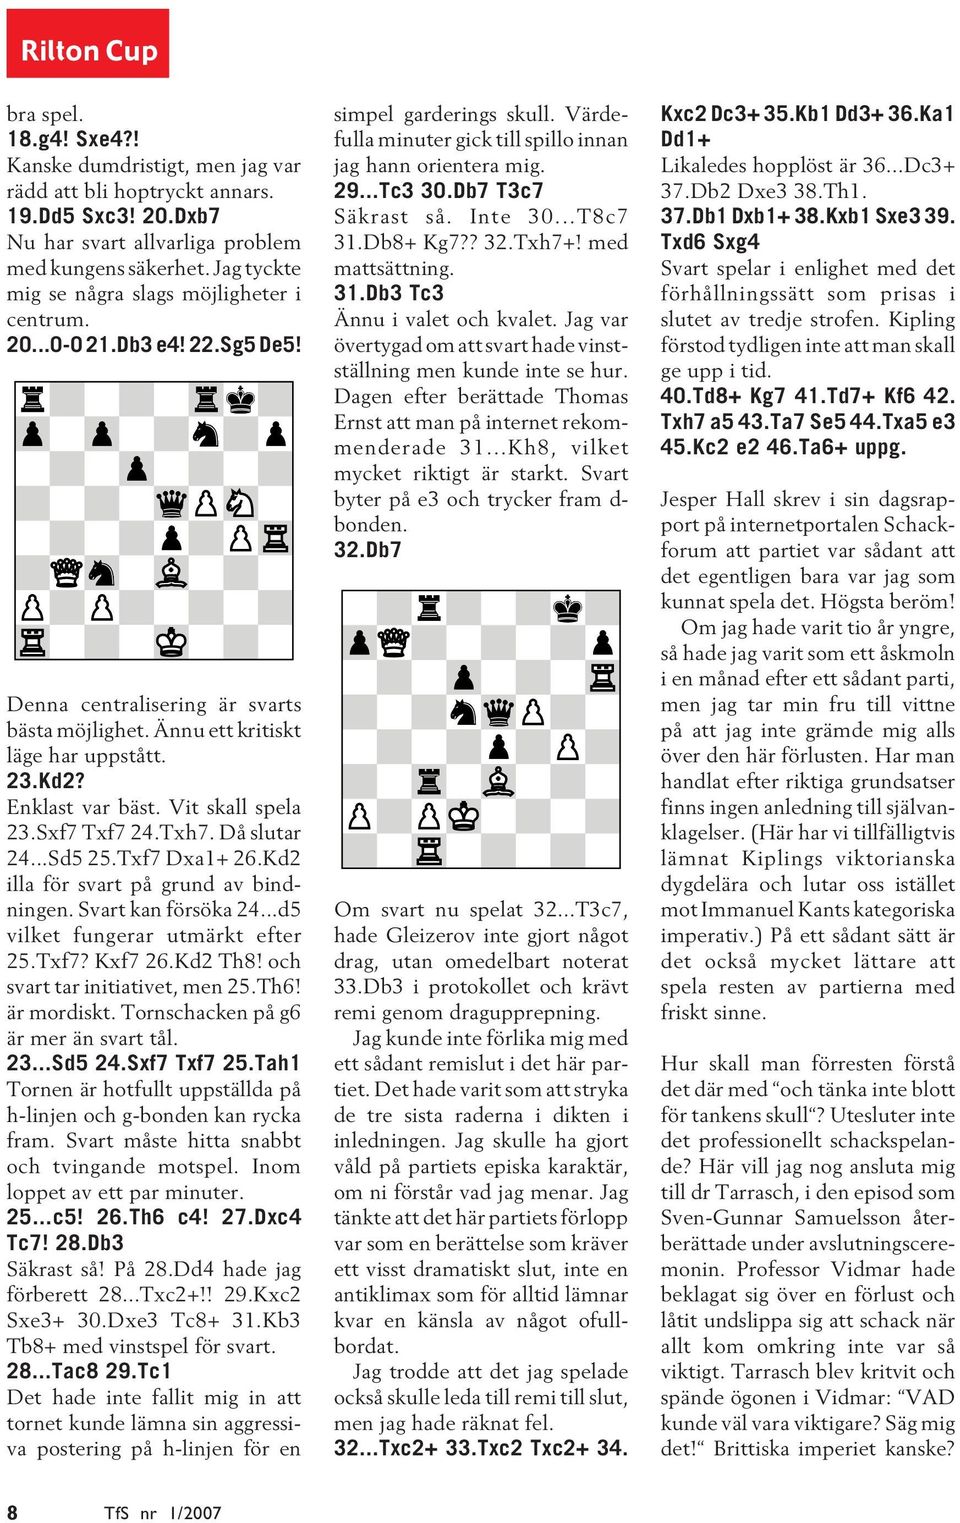 Vit skall spela 23.Sxf7 Txf7 24.Txh7. Då slutar 24...Sd5 25.Txf7 Dxa1+ 26.Kd2 illa för svart på grund av bindningen. Svart kan försöka 24...d5 vilket fungerar utmärkt efter 25.Txf7? Kxf7 26.Kd2 Th8!